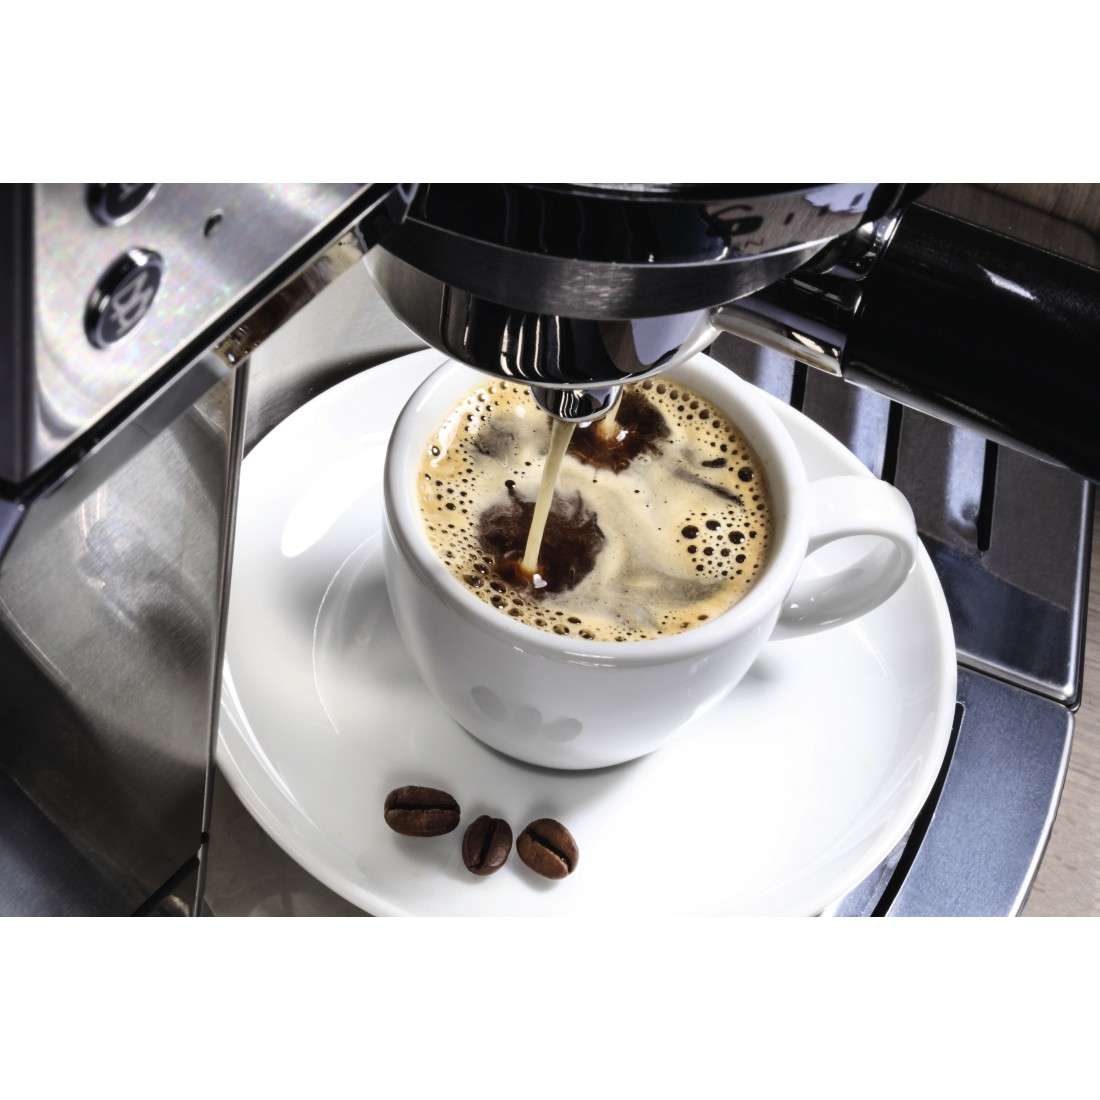 Dauerfilter für Kaffeemaschine, Ersatz für Filtergröße 4